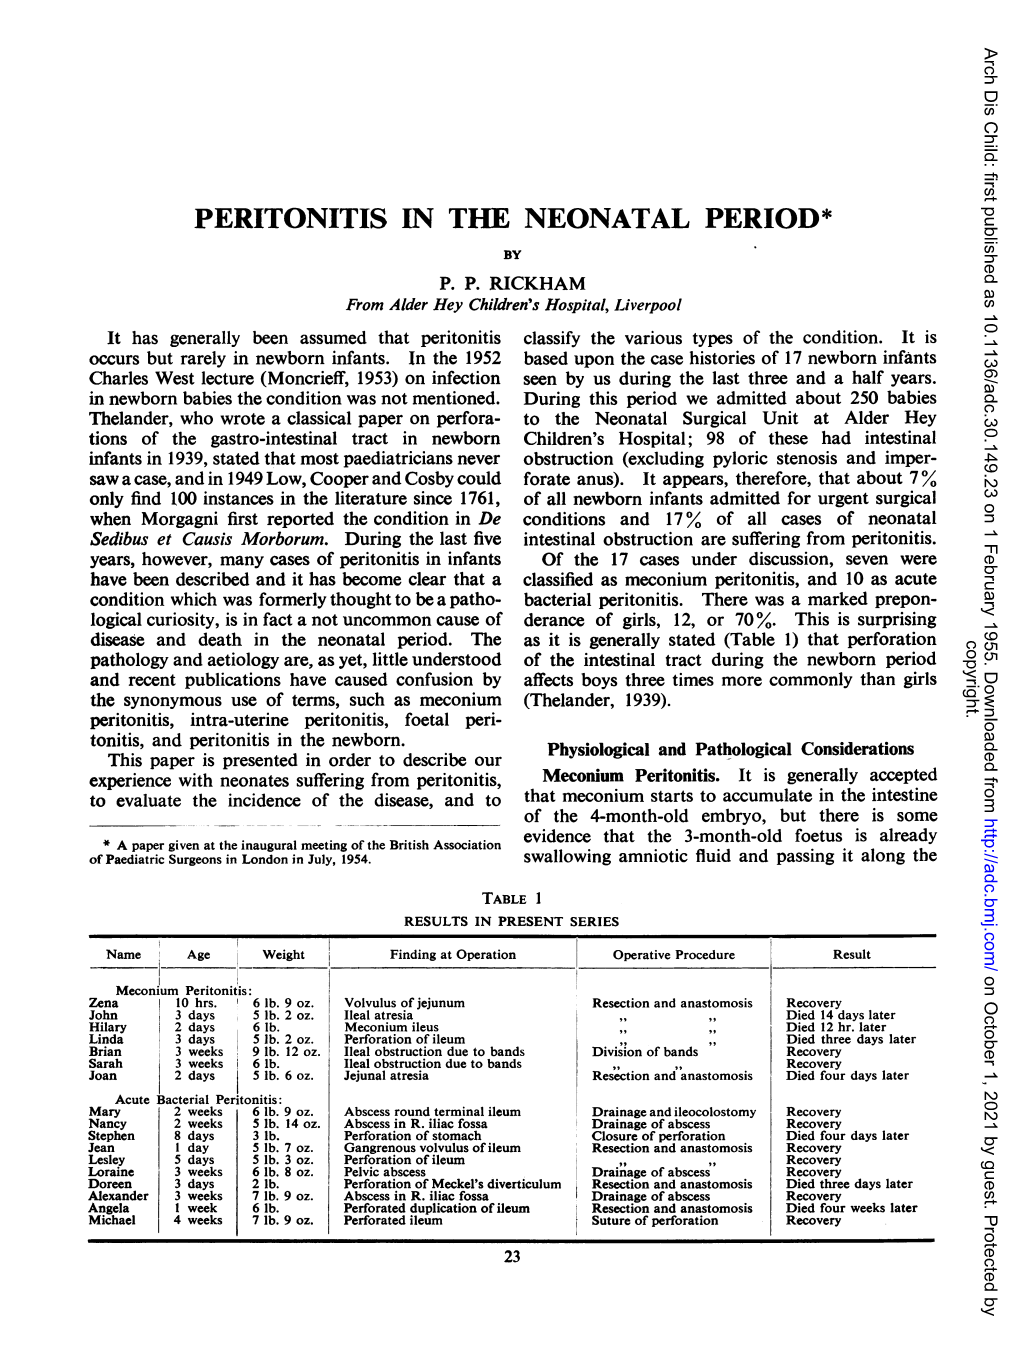 Peritonitis in the Neonatalperiod*